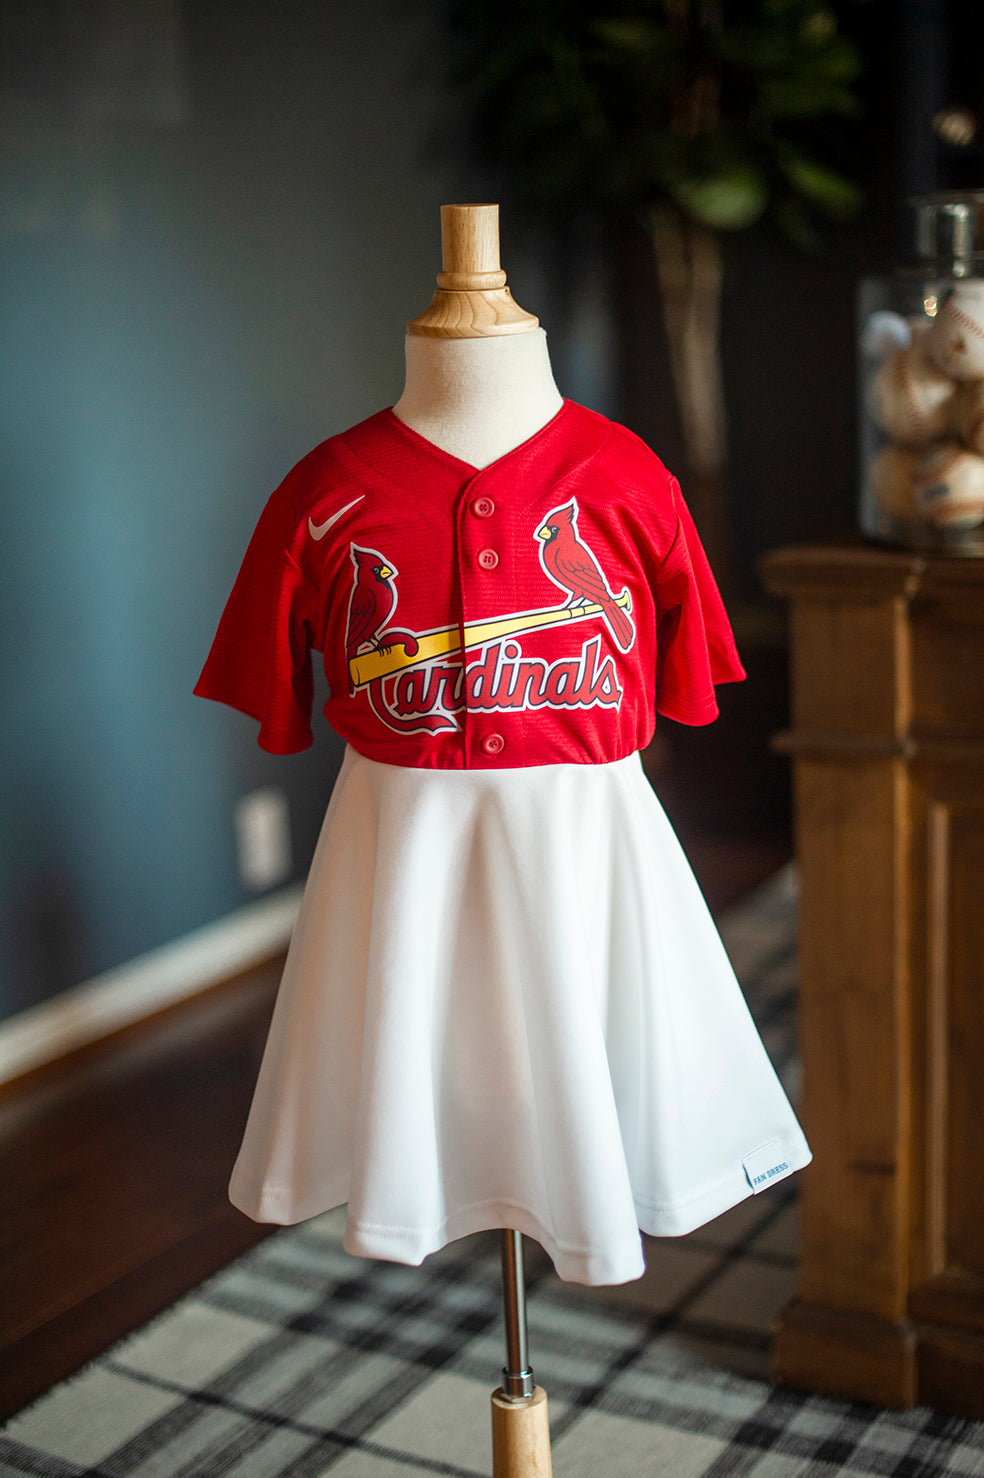 st louis cardinals baseball shirt